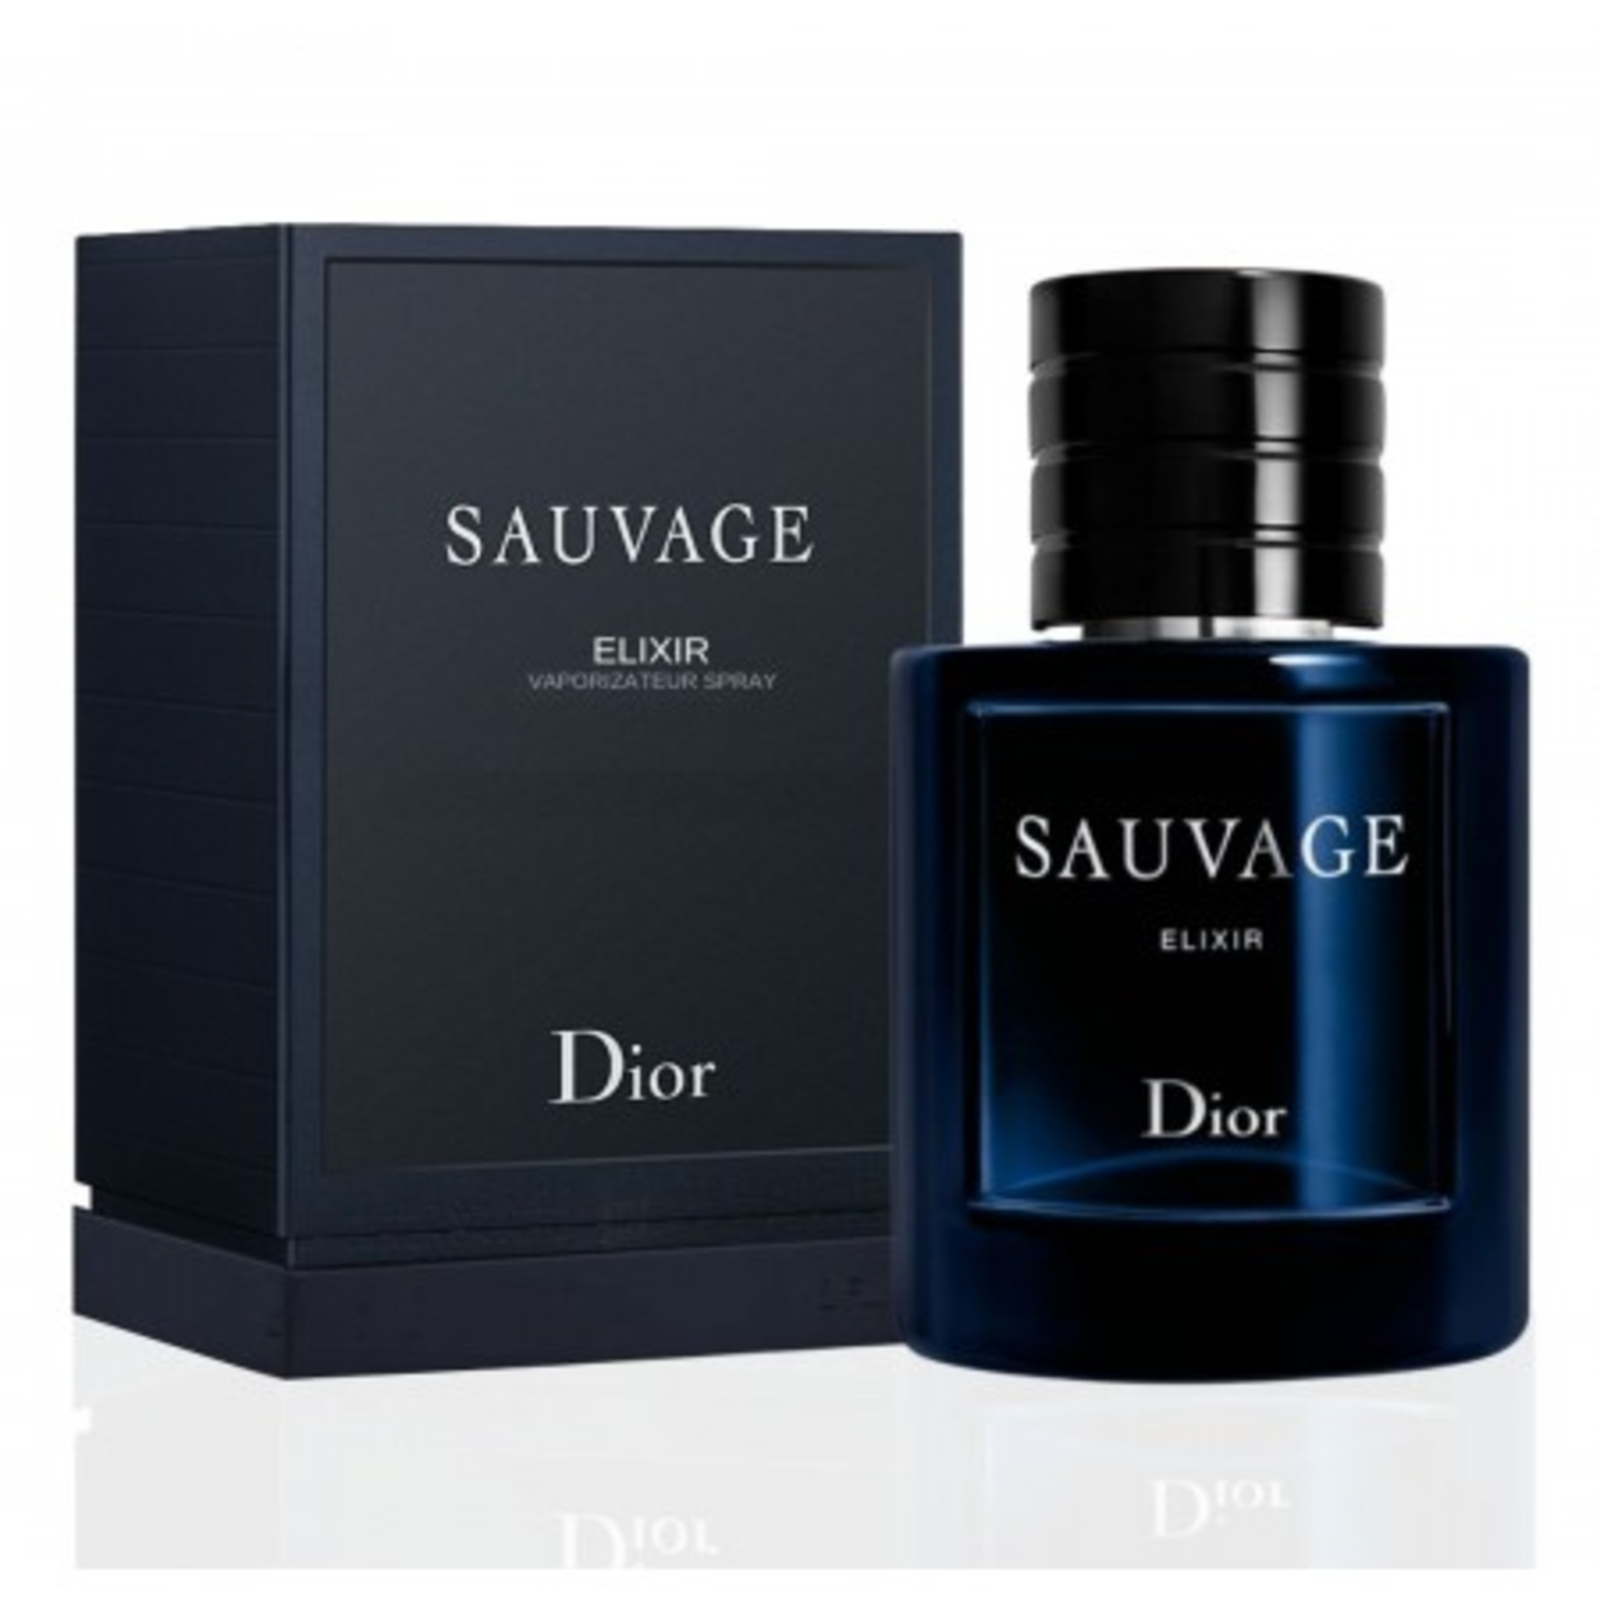 Dior Sauvage Elixir Men PARFUM 60ml / 2.0 Fl. Oz